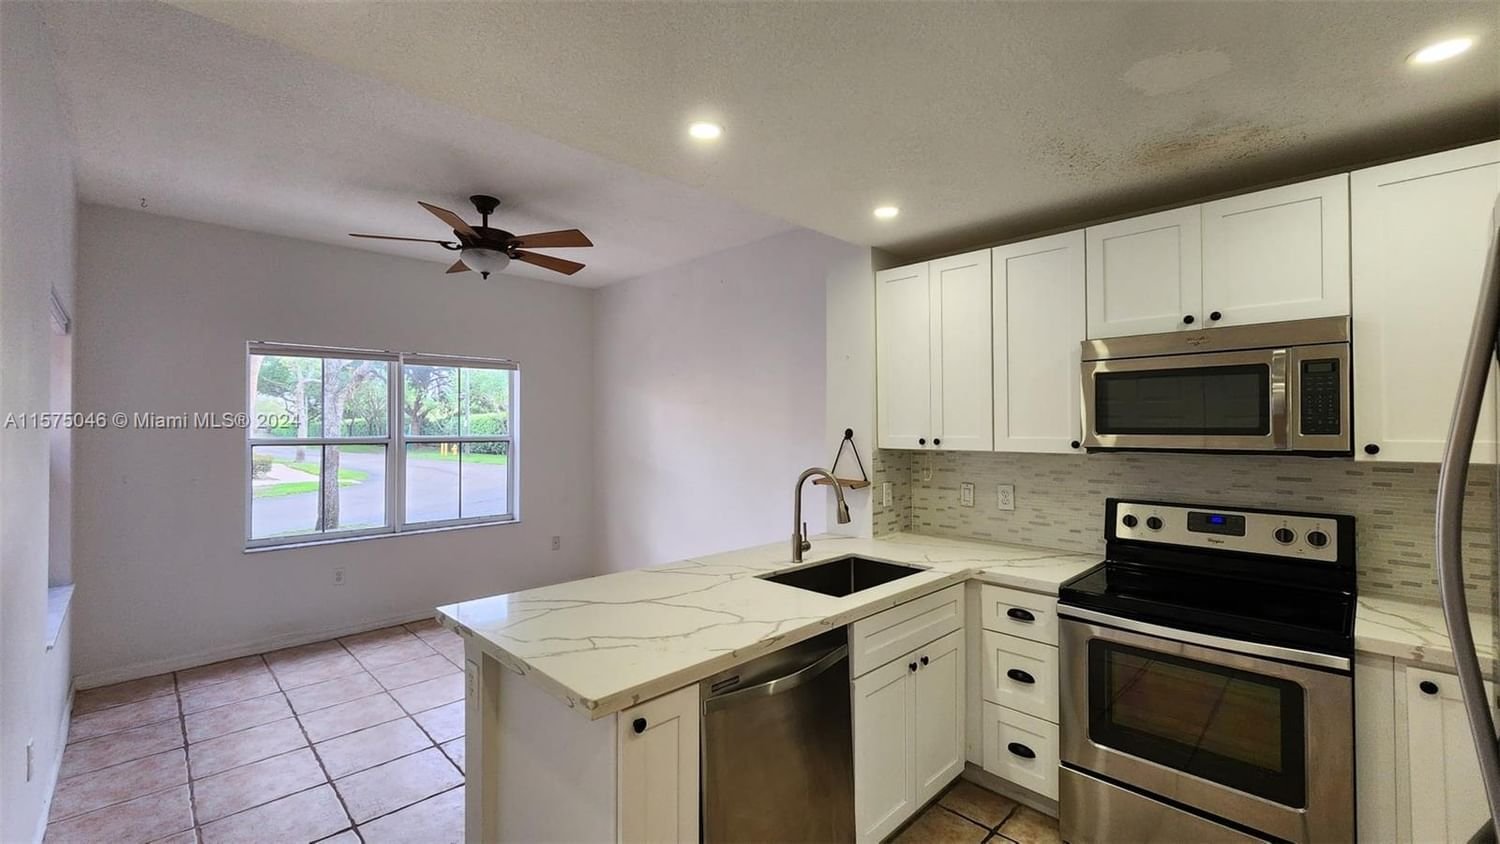 Real estate property located at 8531 139th Ter, Miami-Dade County, VILLA VIZCAYA CONDO, Miami Lakes, FL